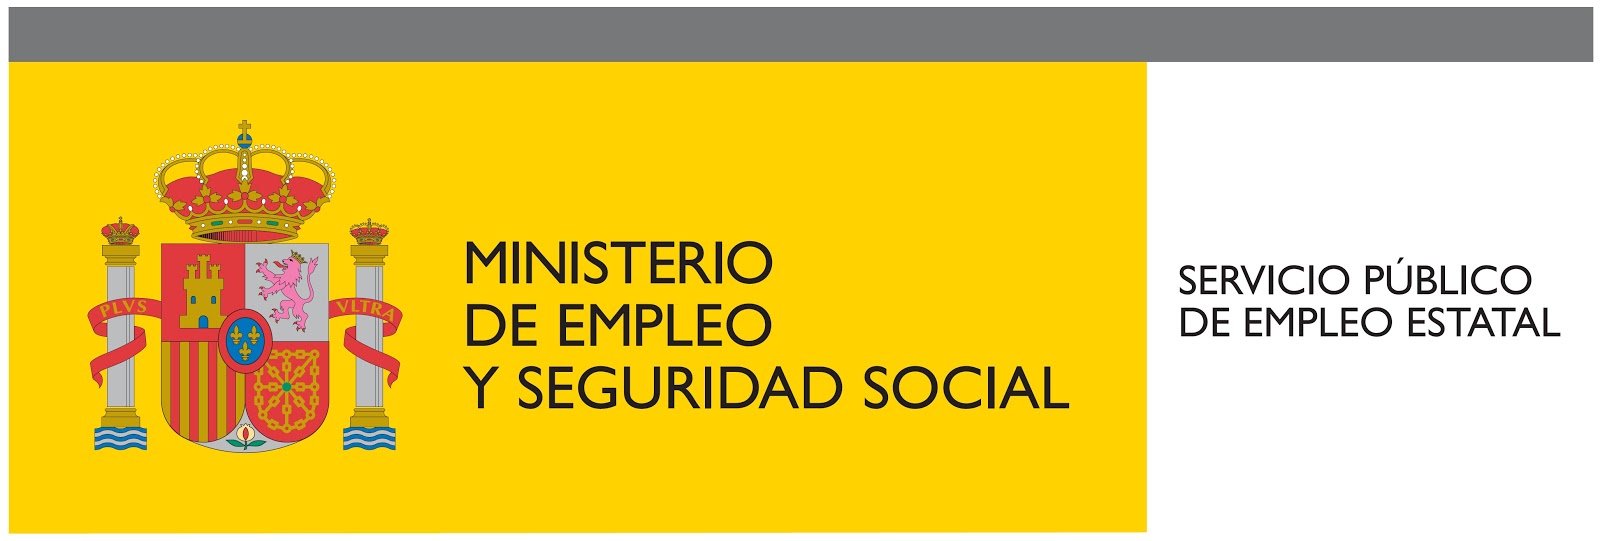 Ministerio de empleo y seguridad social